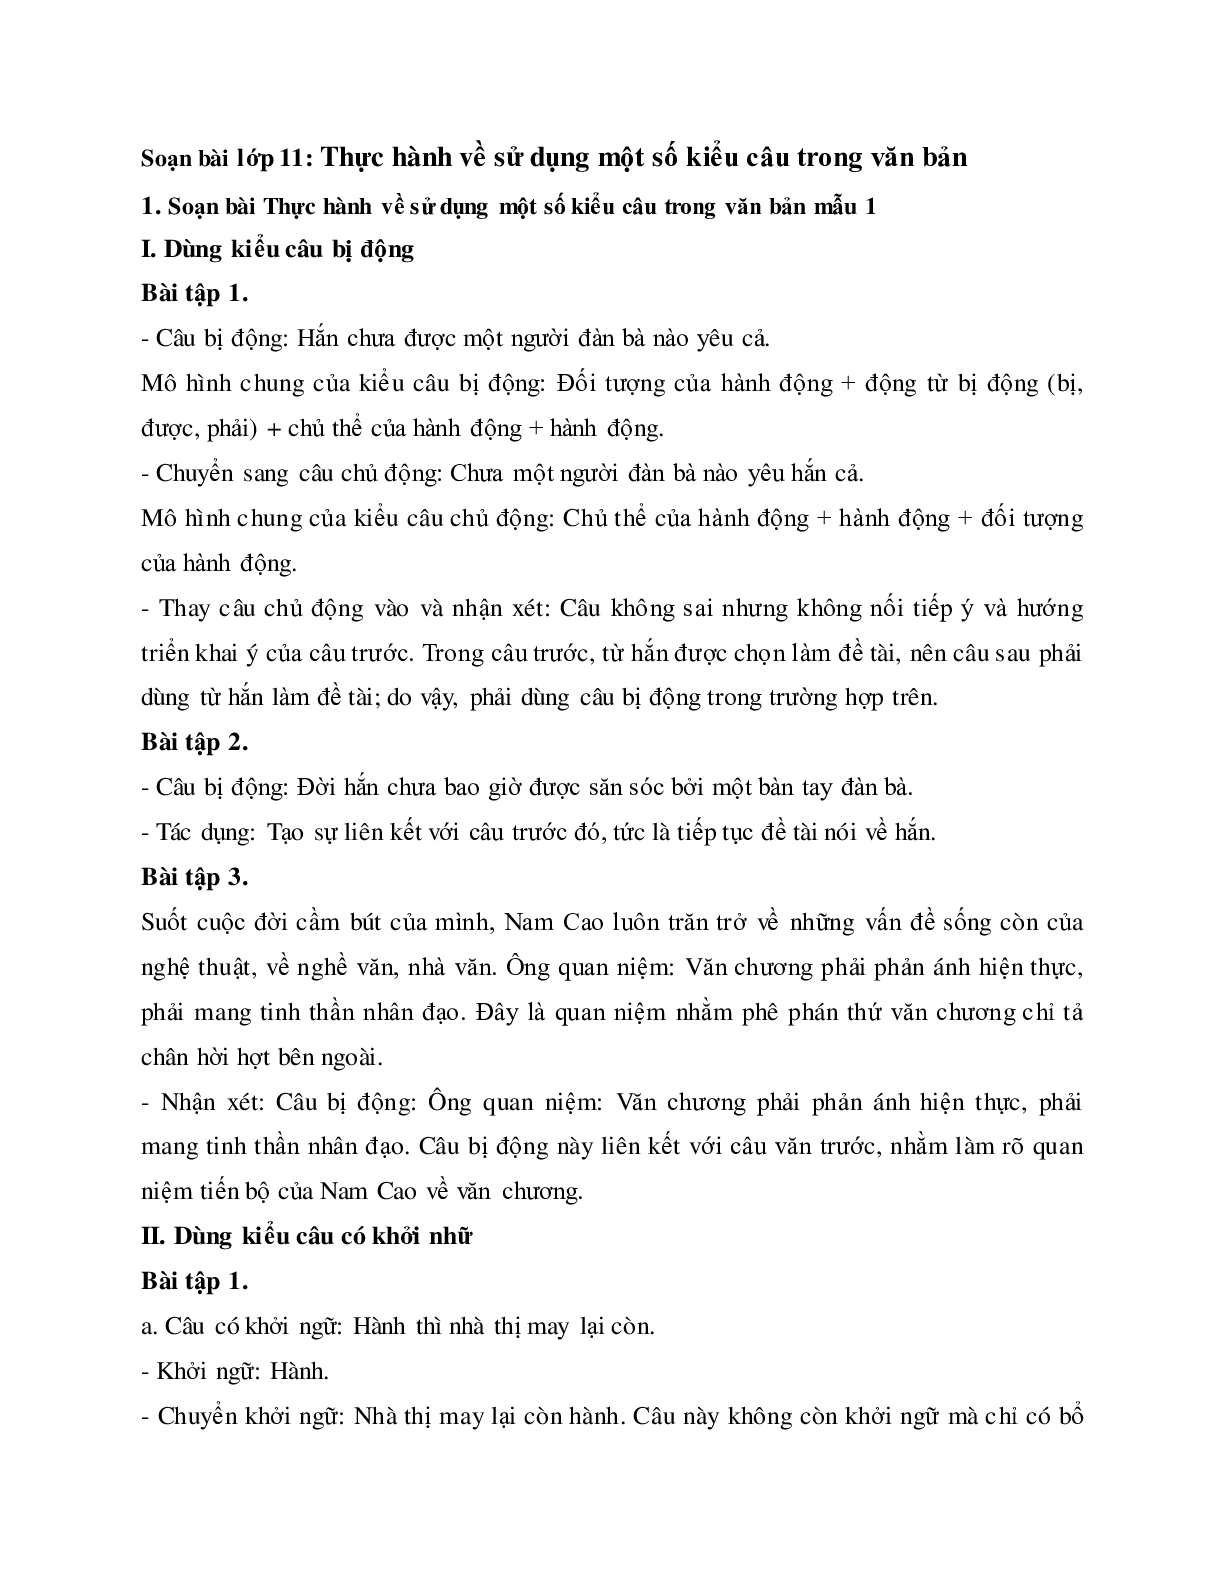 Soạn bài Thực hành về sử dụng một số kiểu câu trong văn bản - ngắn nhất Soạn văn 11 (trang 1)